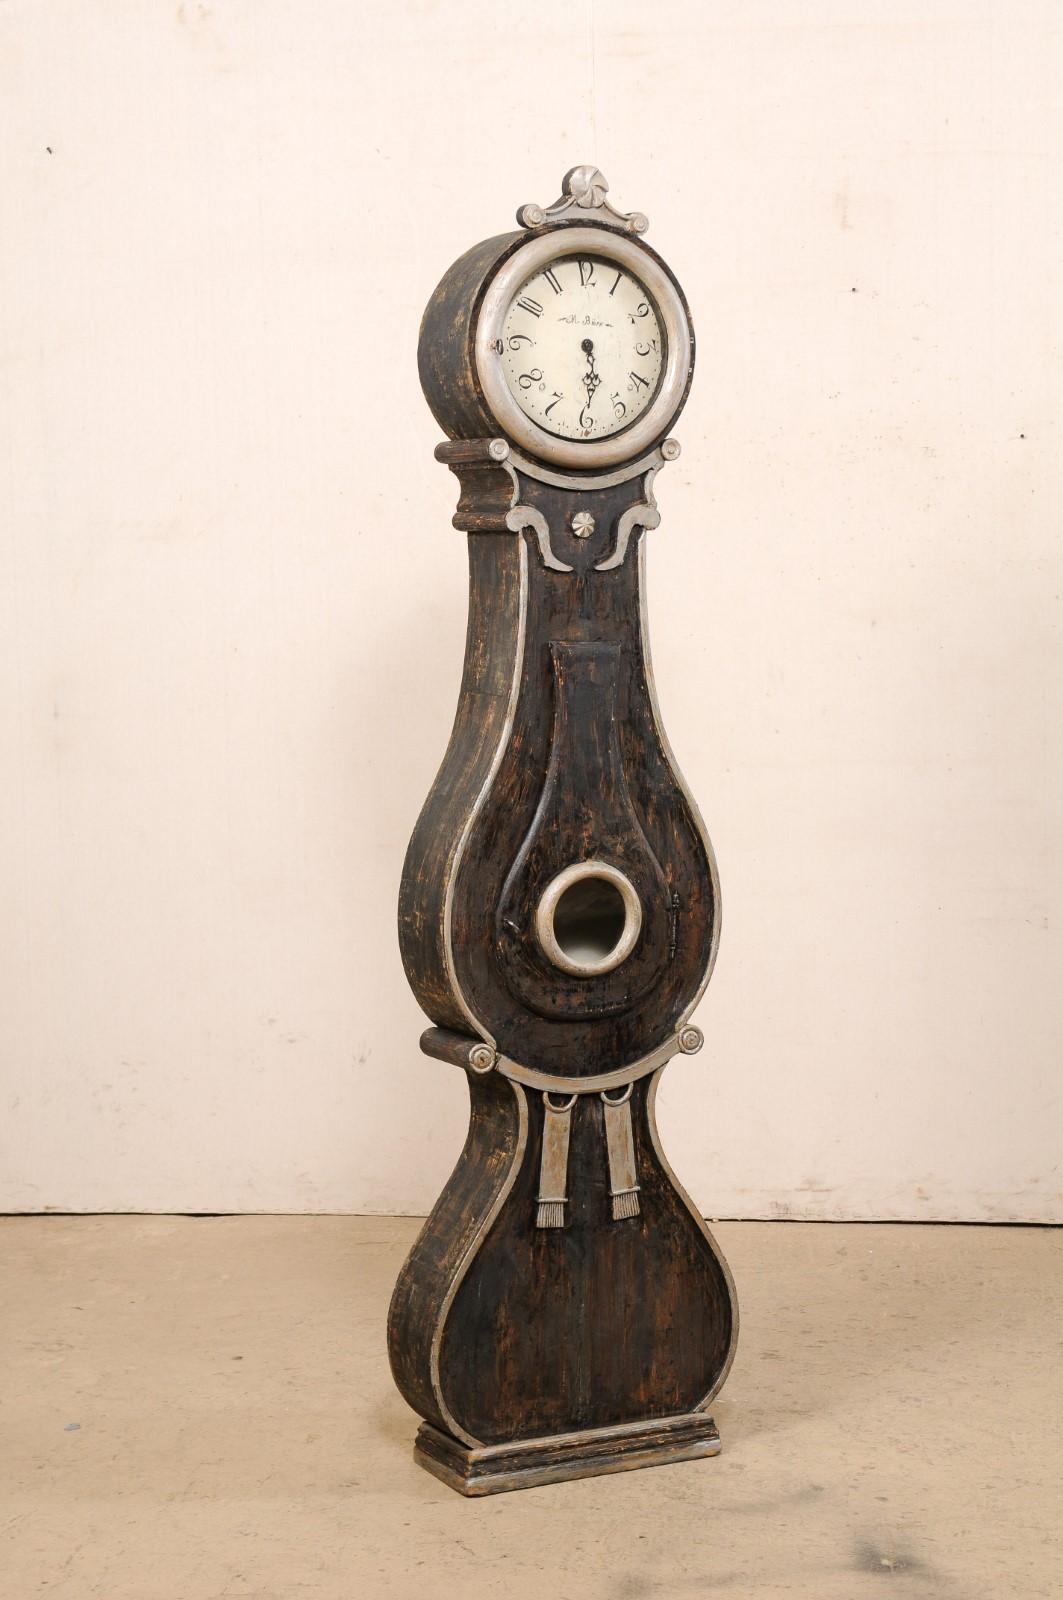 Pendule suédoise Fryksdahl, avec de belles décorations, datant du début du 19e siècle. Cette horloge antique Fryksdahl de Suède est ornée de nombreux accents décoratifs qui rehaussent et accentuent la forme de cette horloge. Le cimier ou couronne